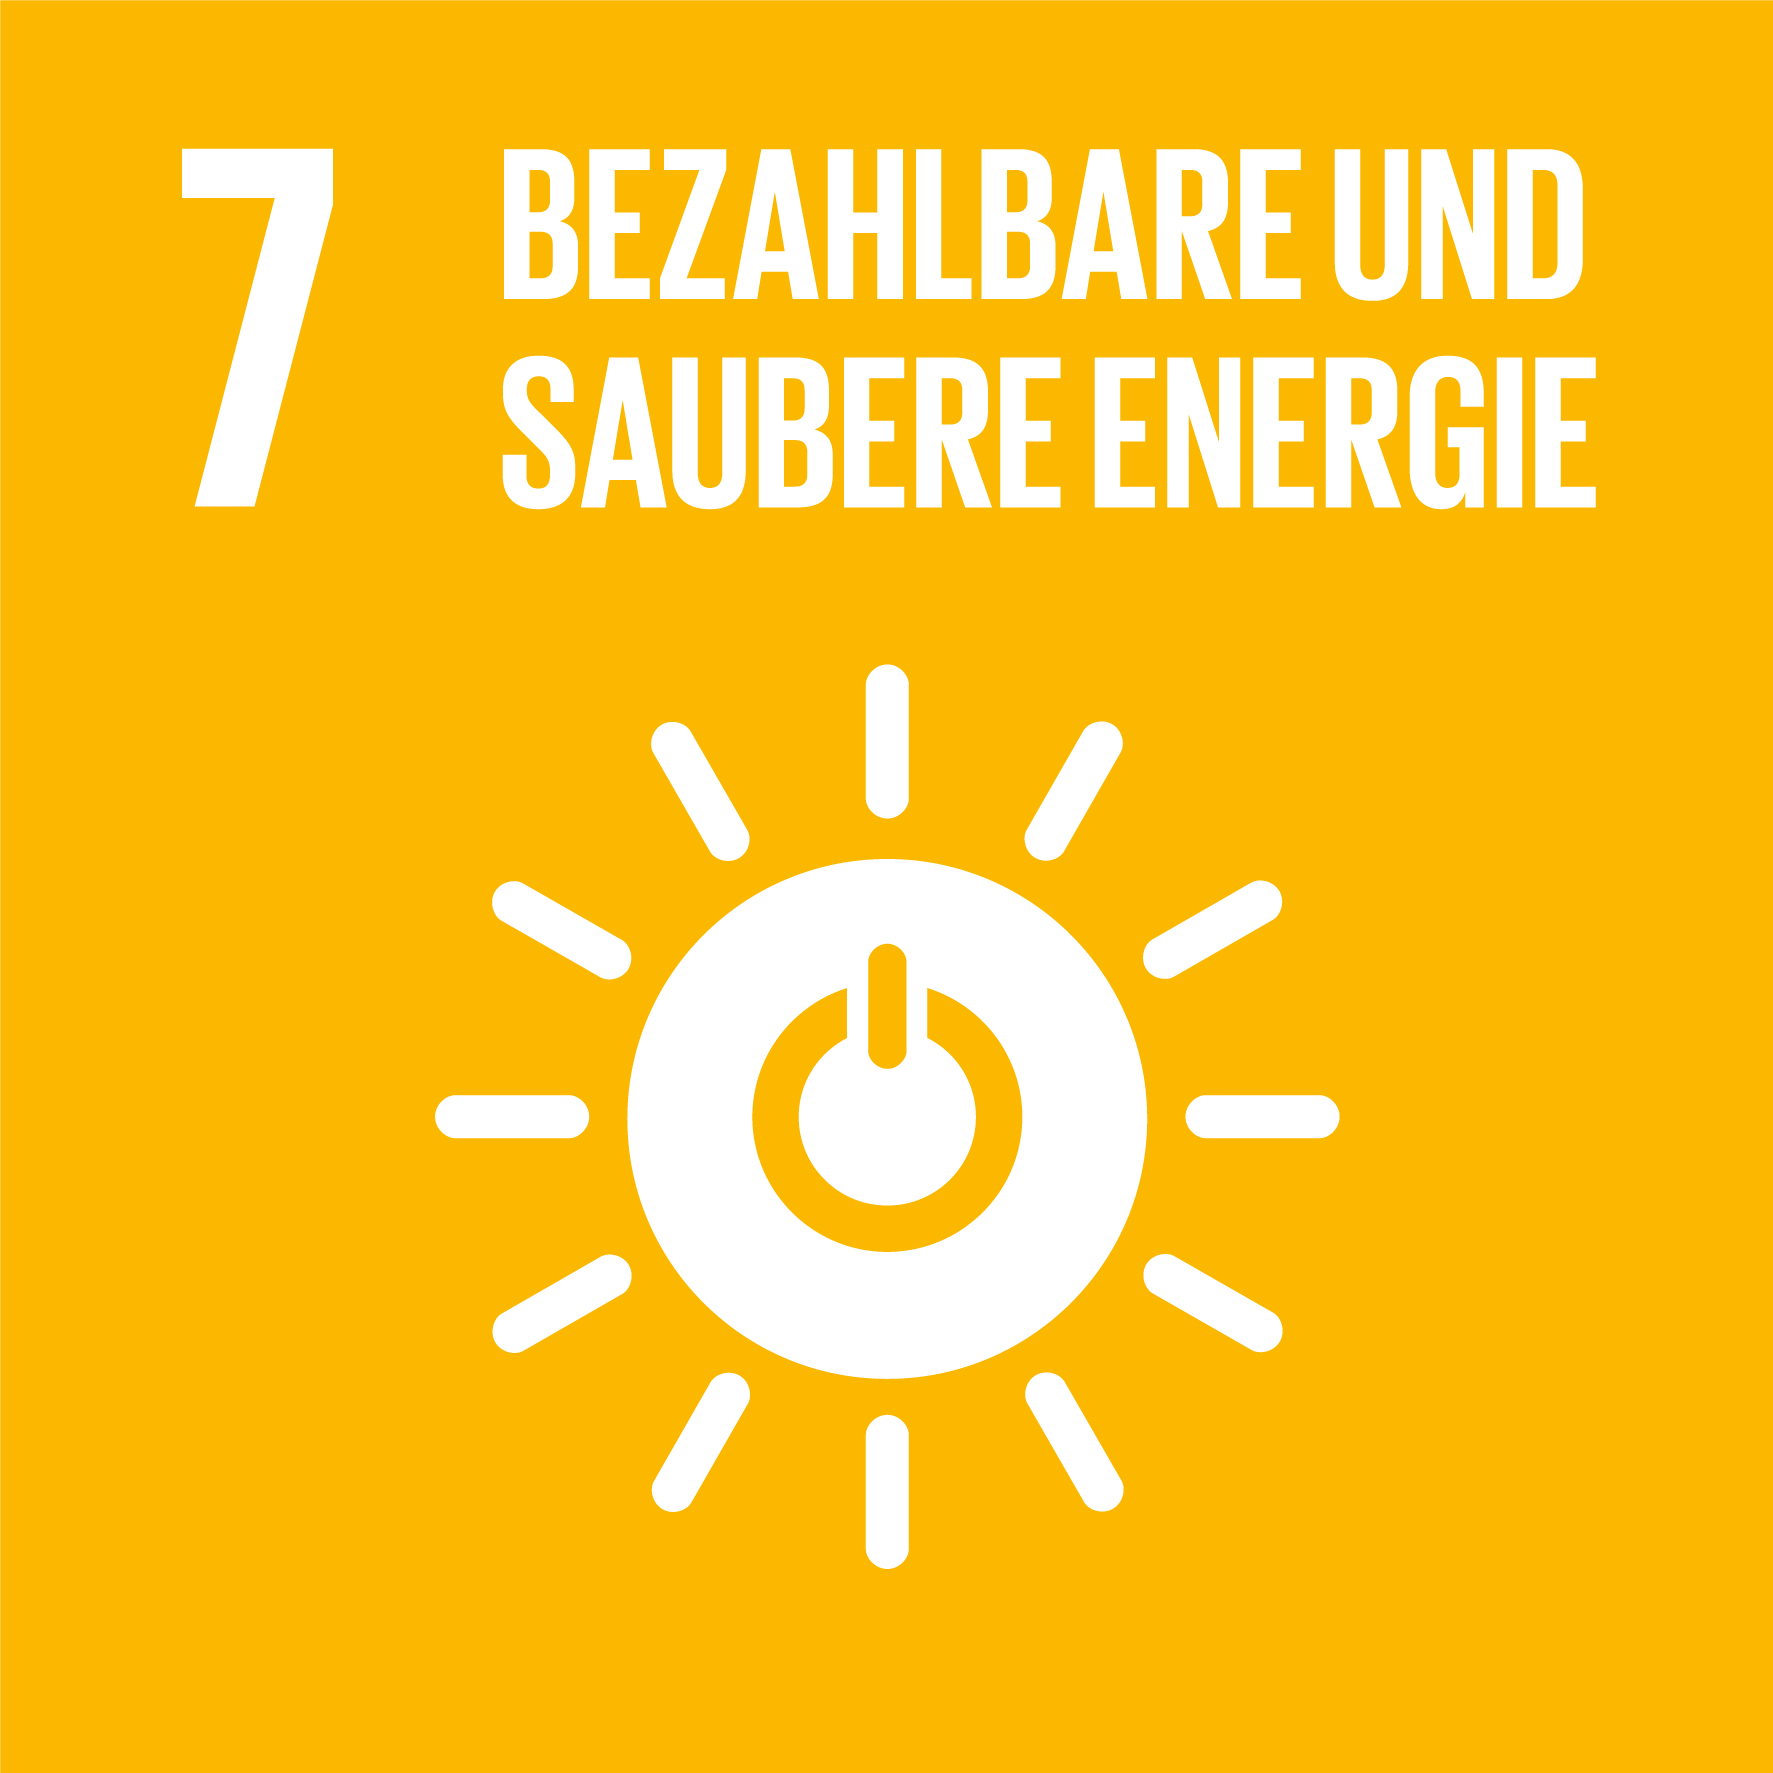 SDG 7: Bezahlbare und saubere Energie